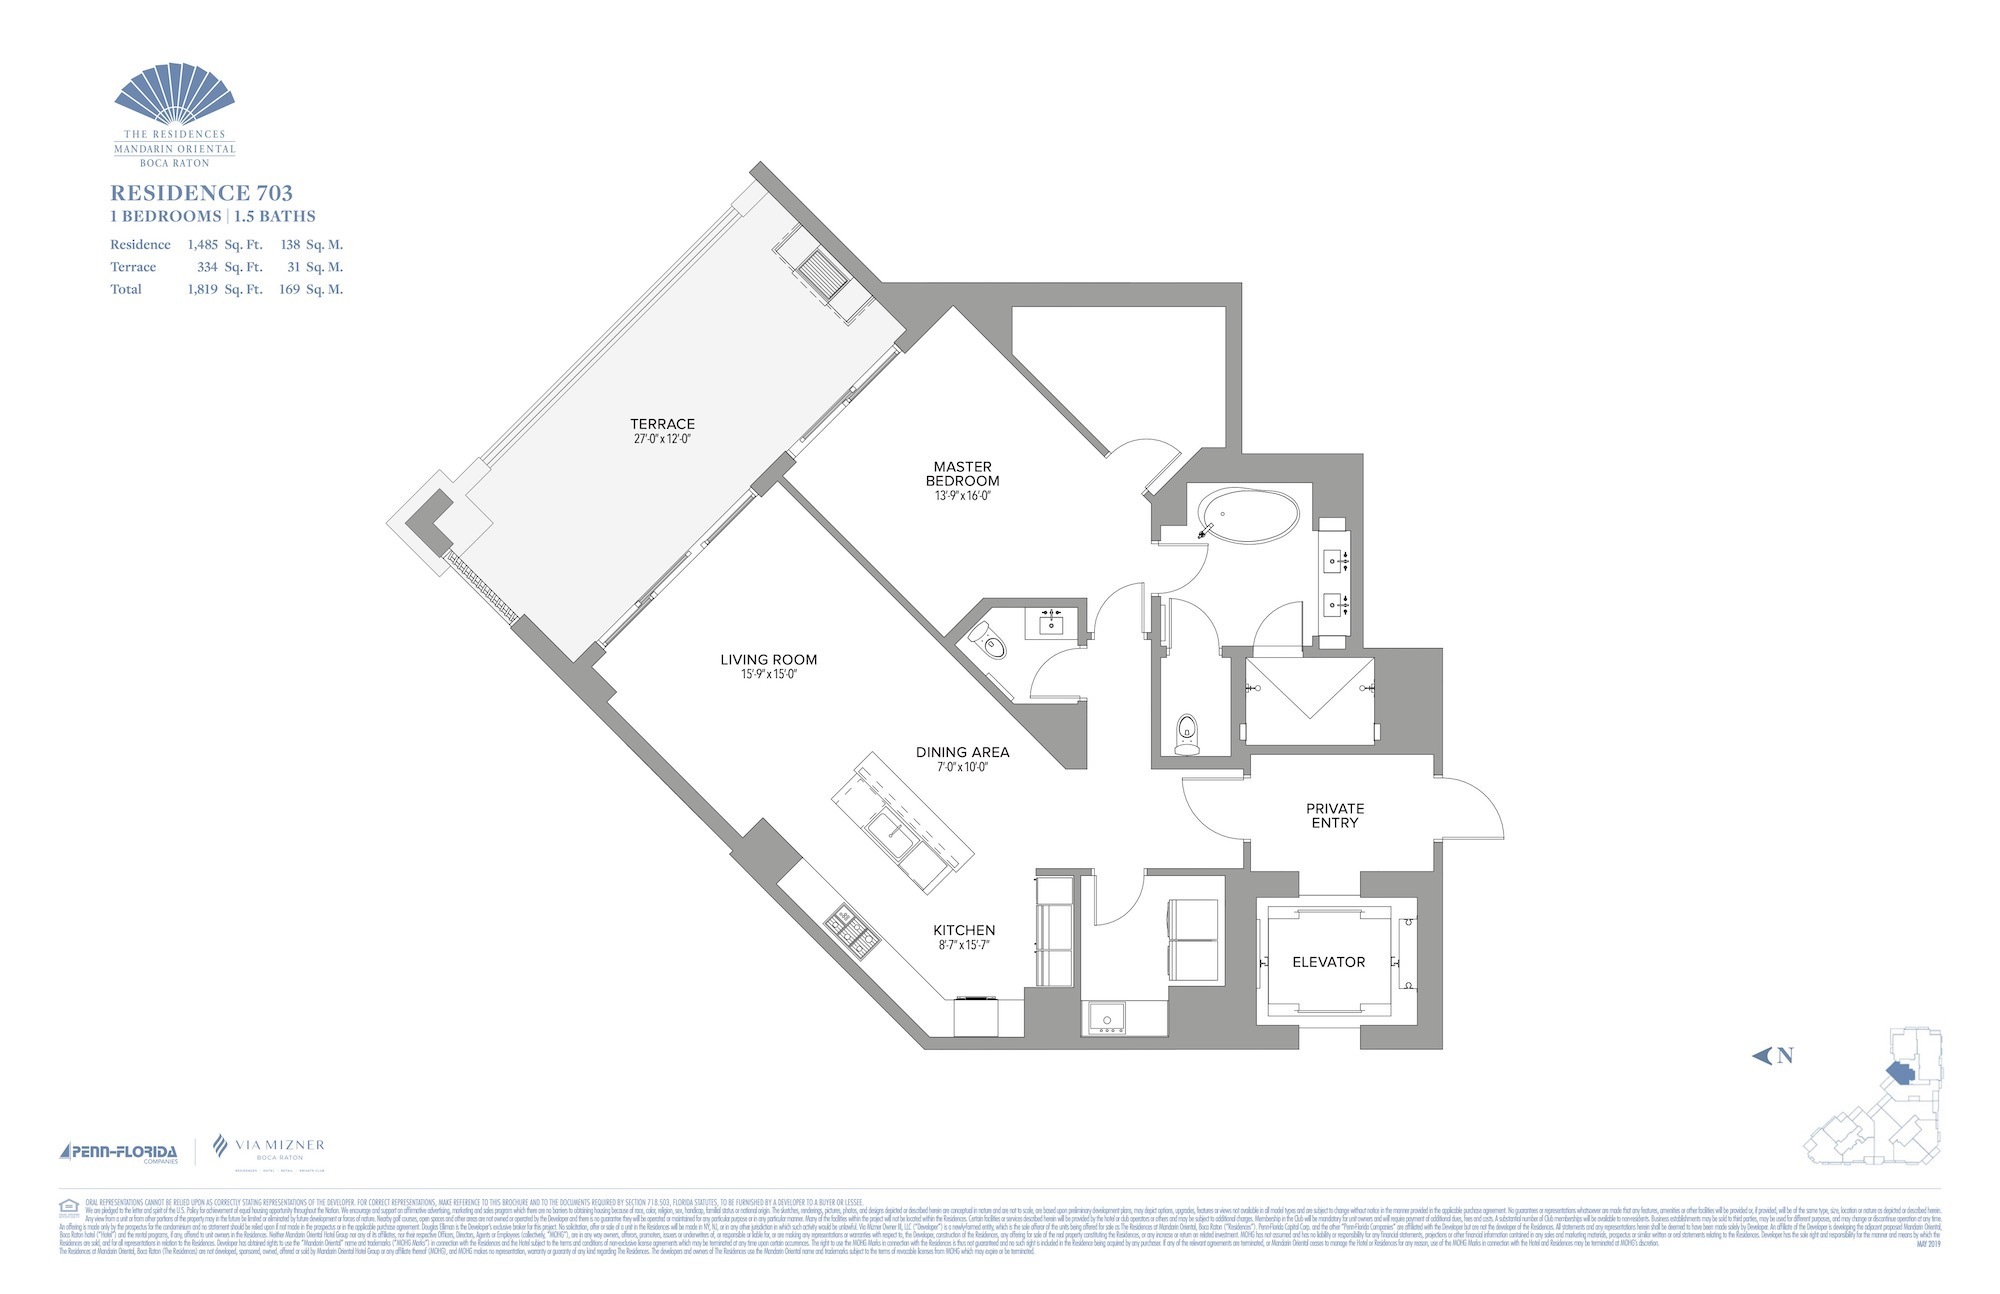 Floor Plan for Residence at Mandarin Oriental Floorplans, Residence 703